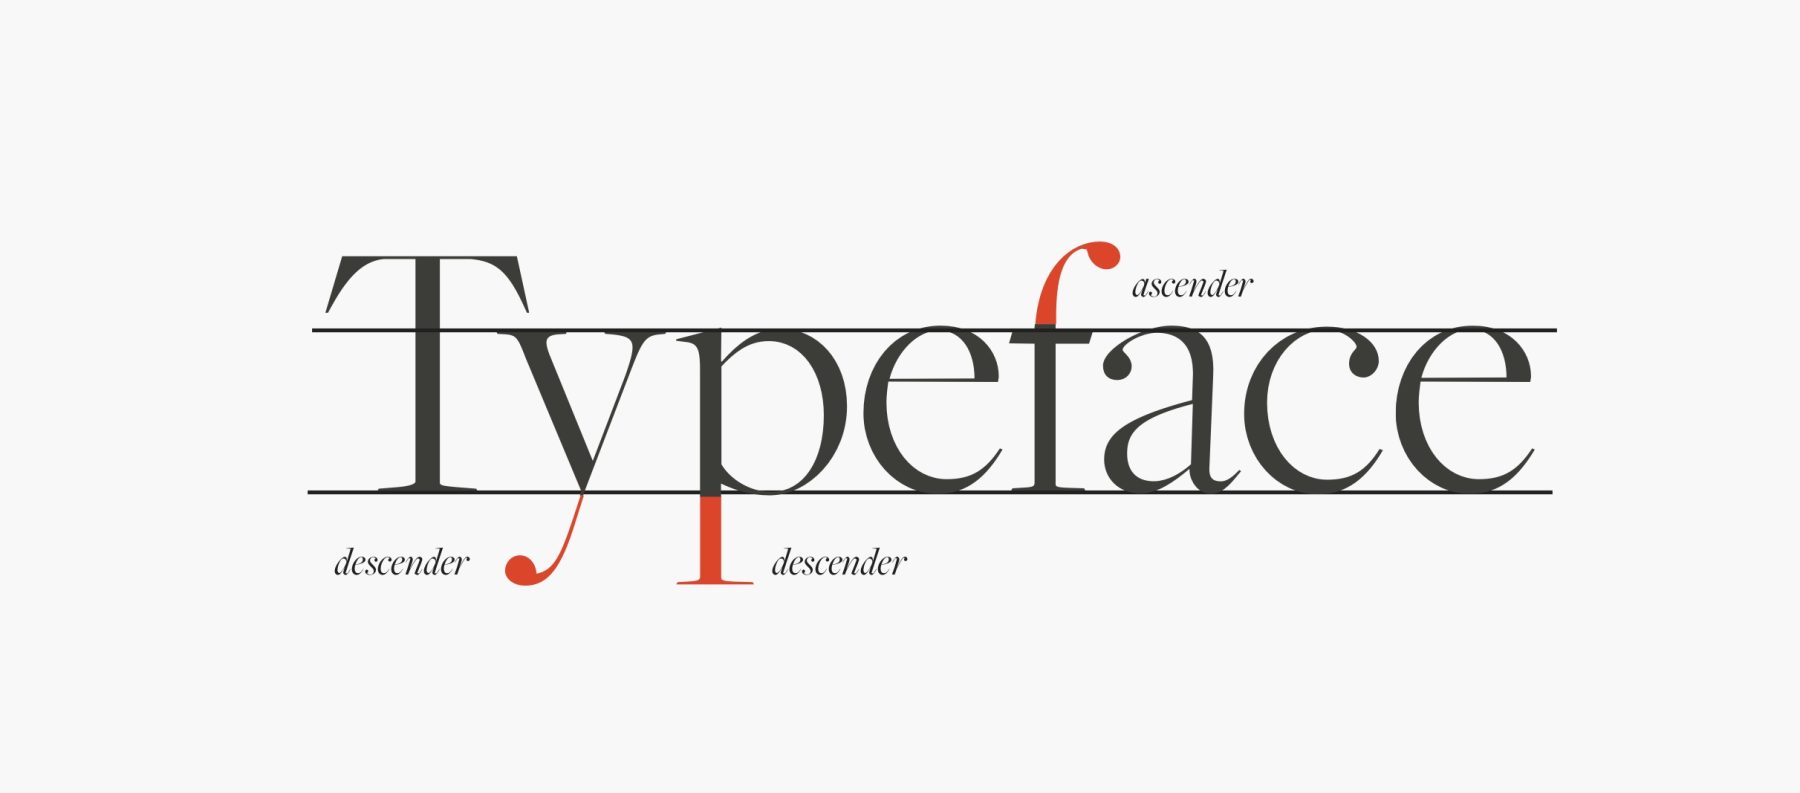 Ascenders & Descenders in typography